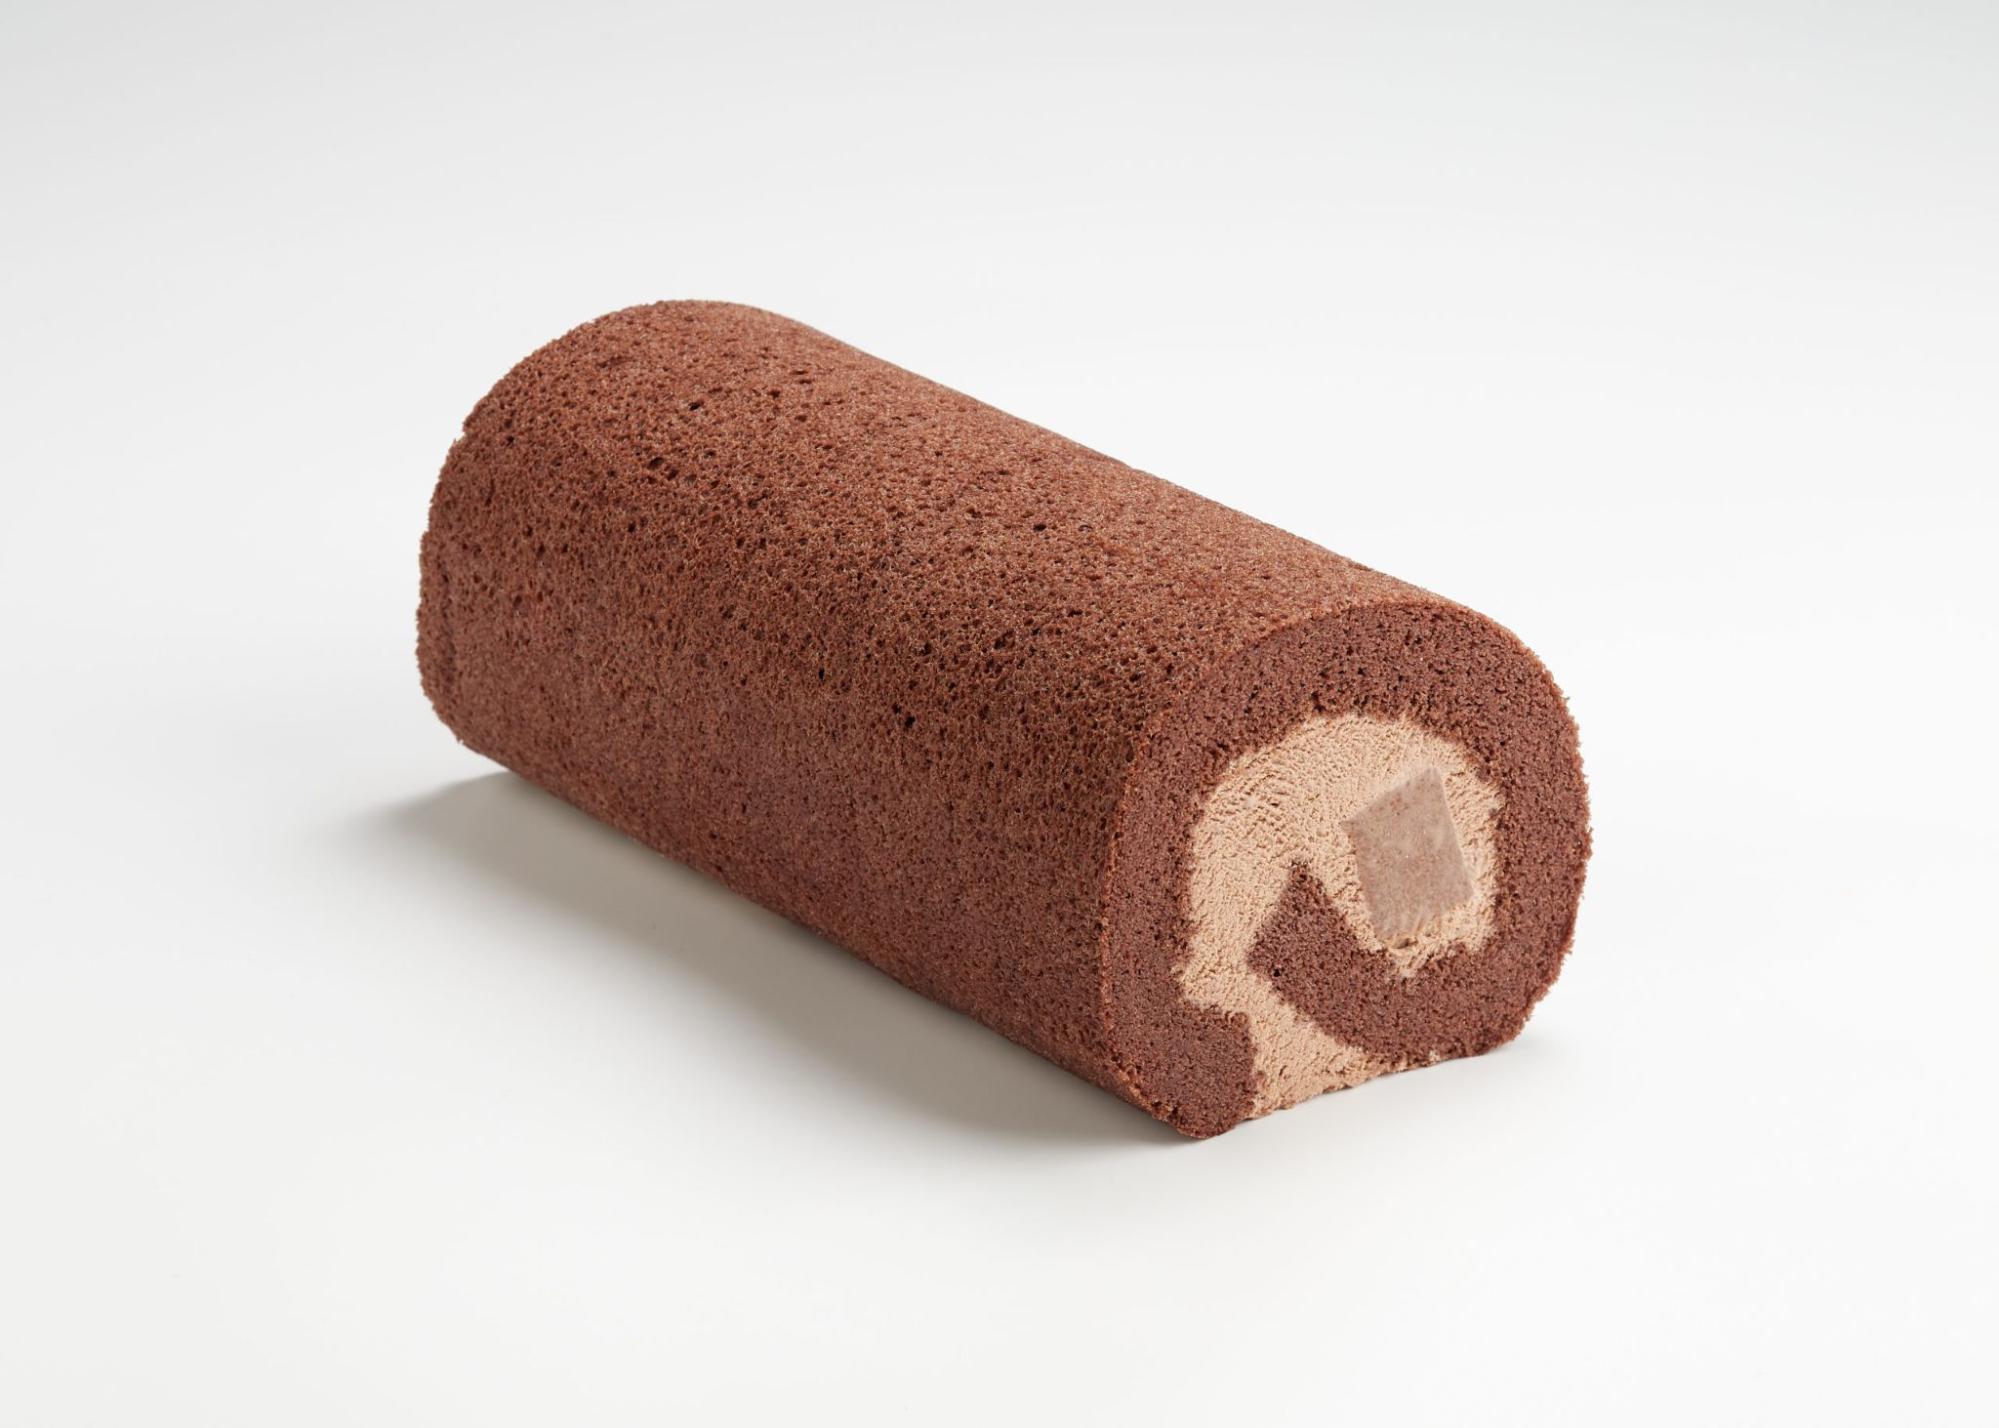 breadtalk pudding roll - hazelnut